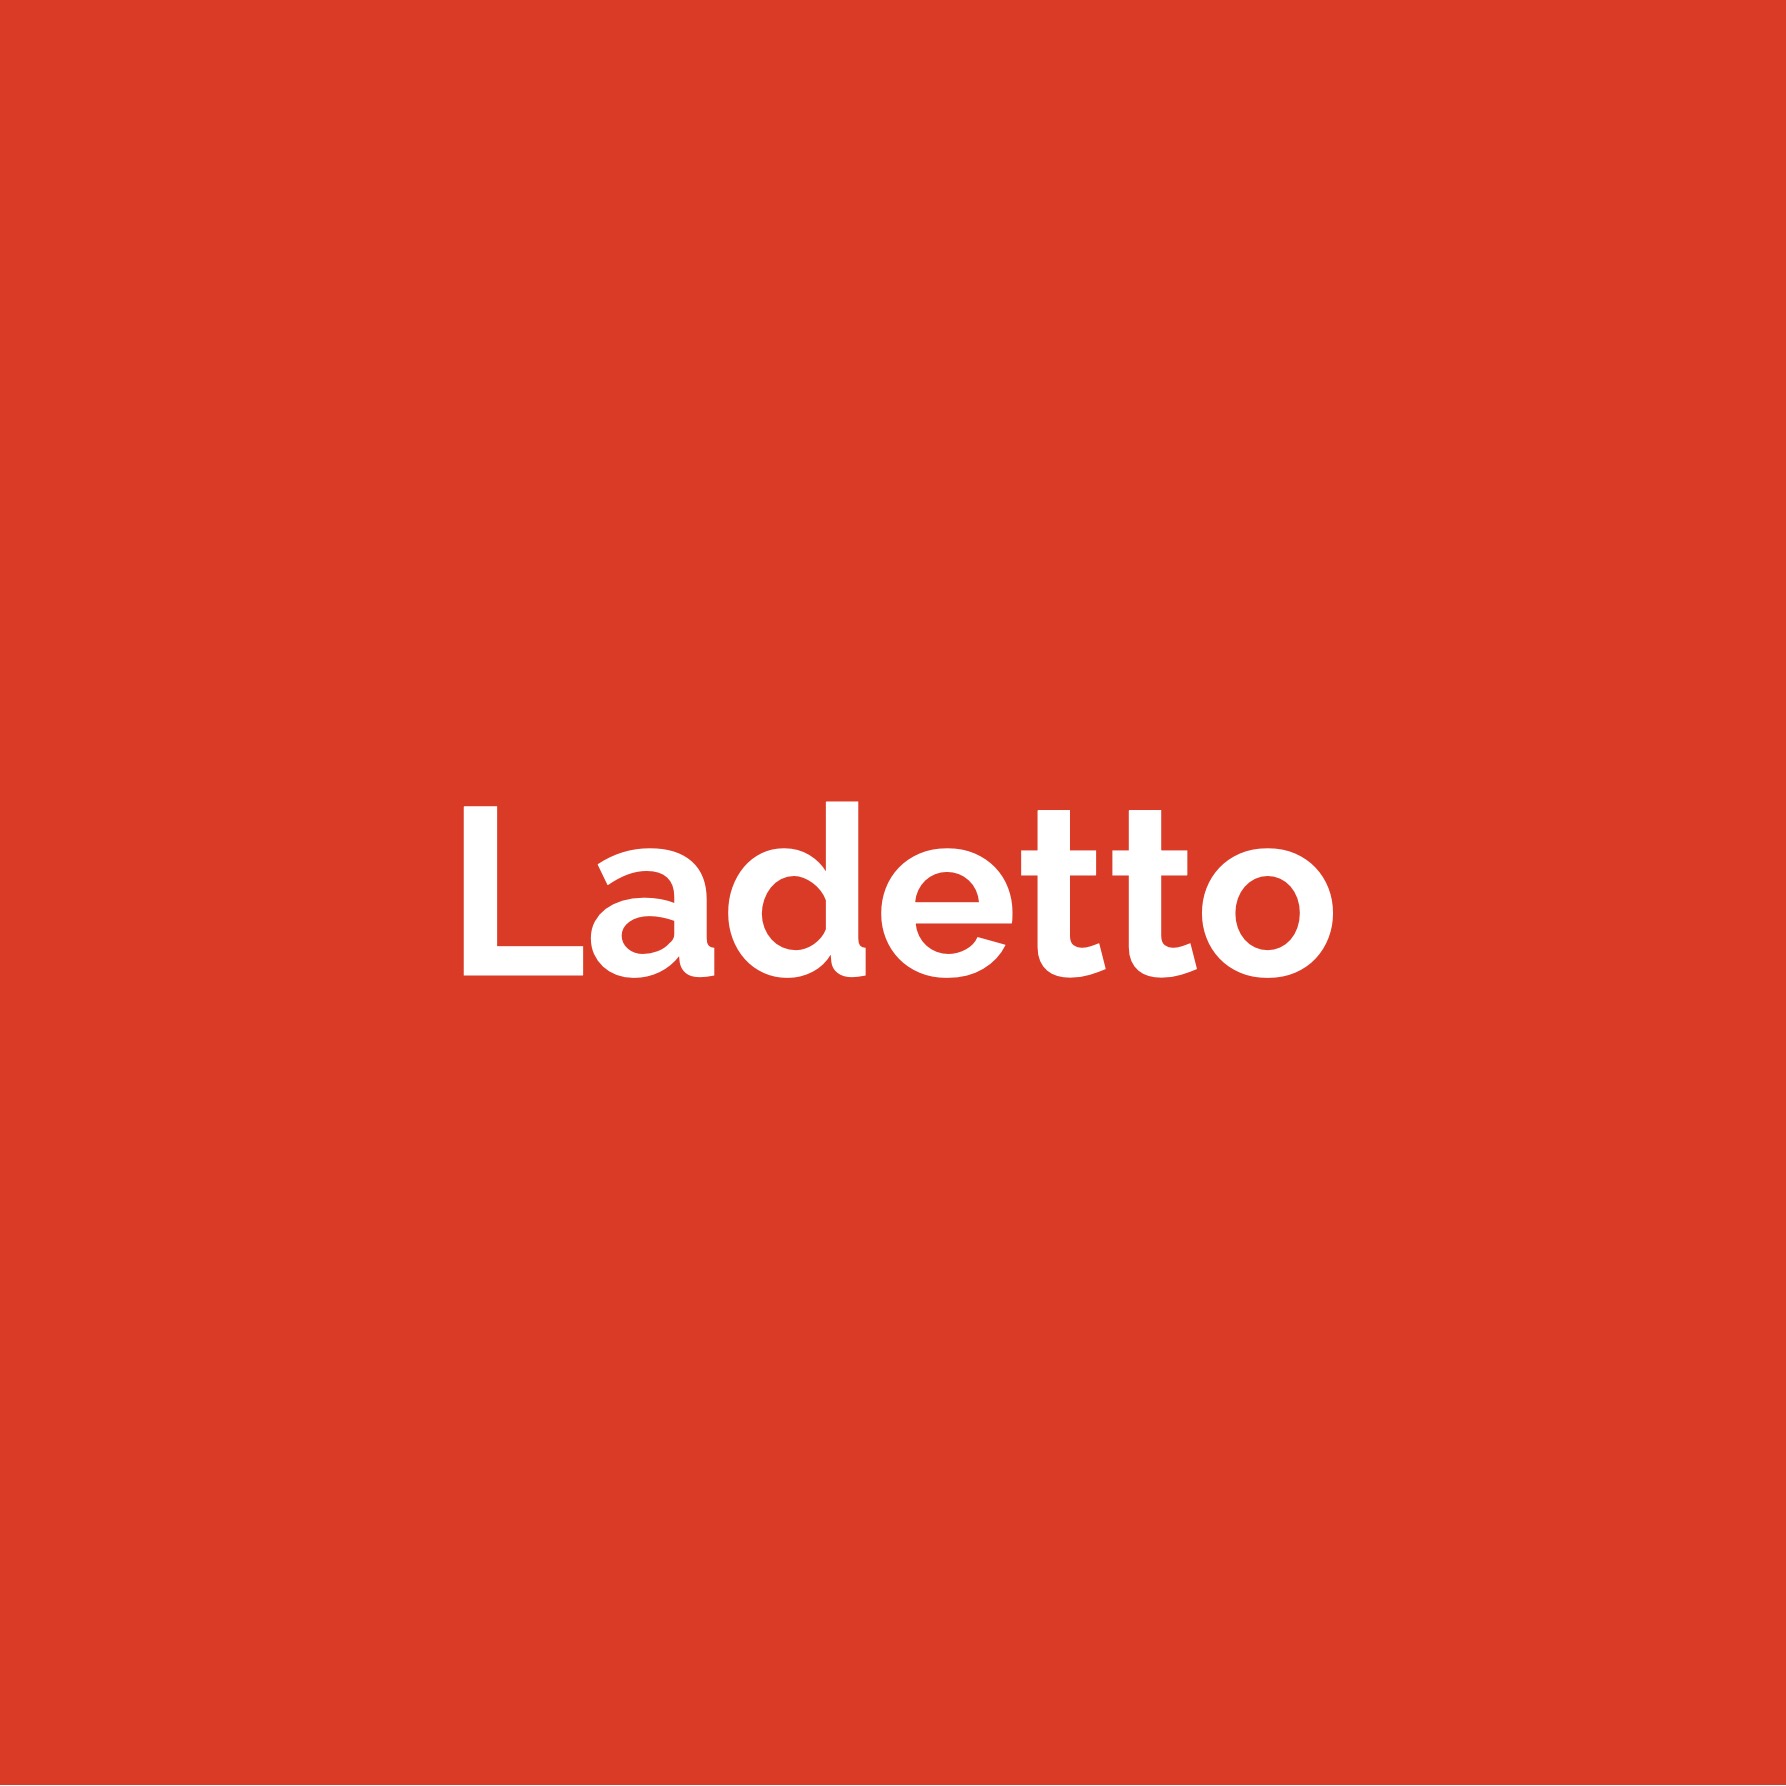 (c) Ladetto.ch